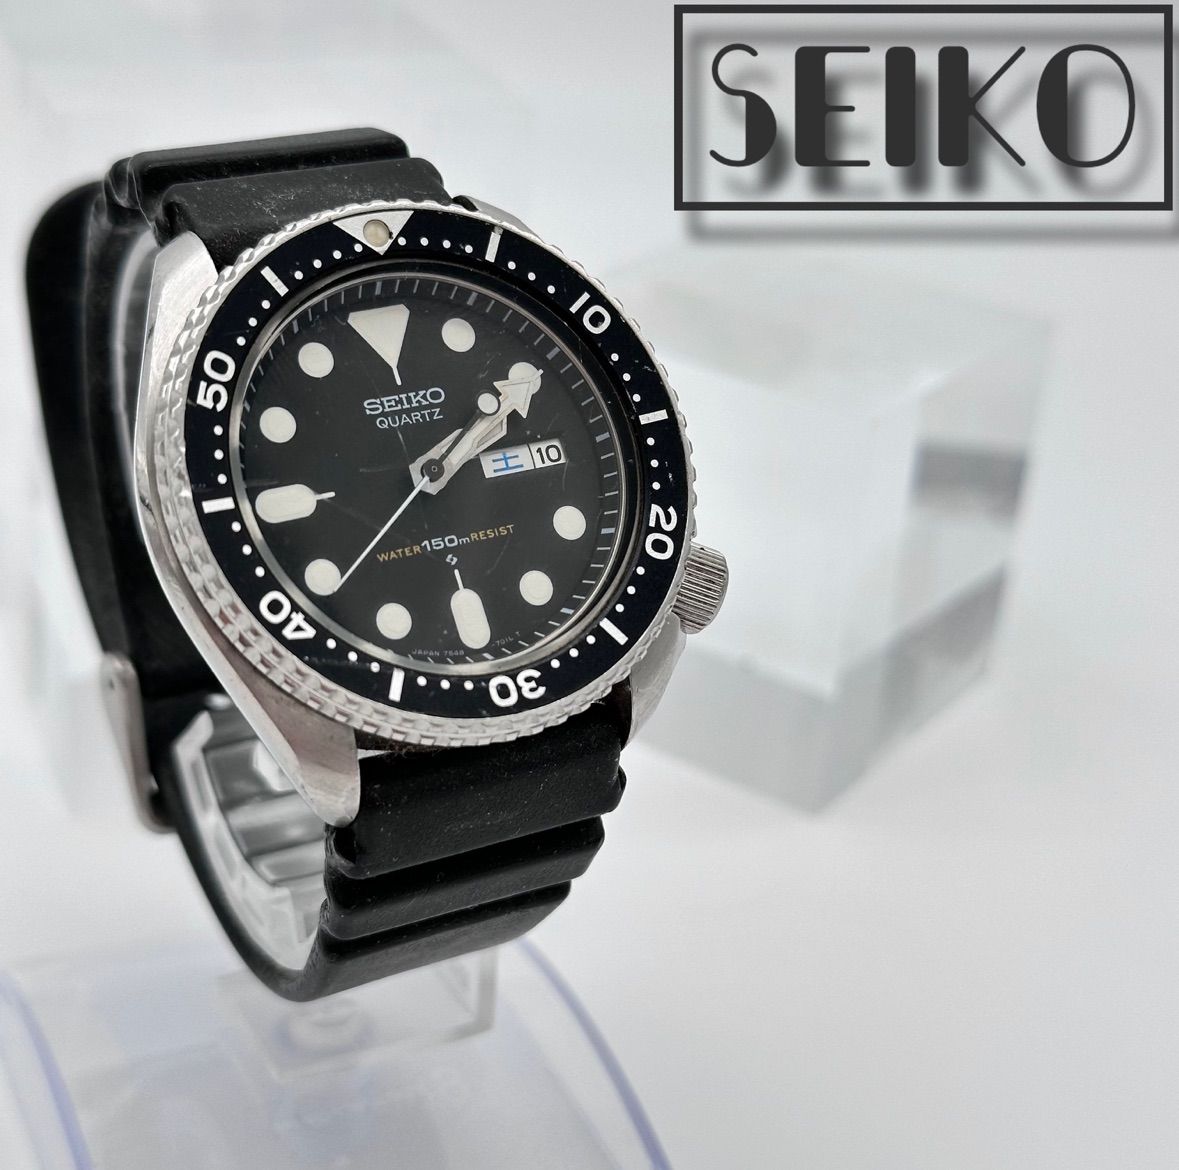 kazubrand_watchSEIKO セイコー クォーツ式 腕時計 メンズ アナログ 黒 ...